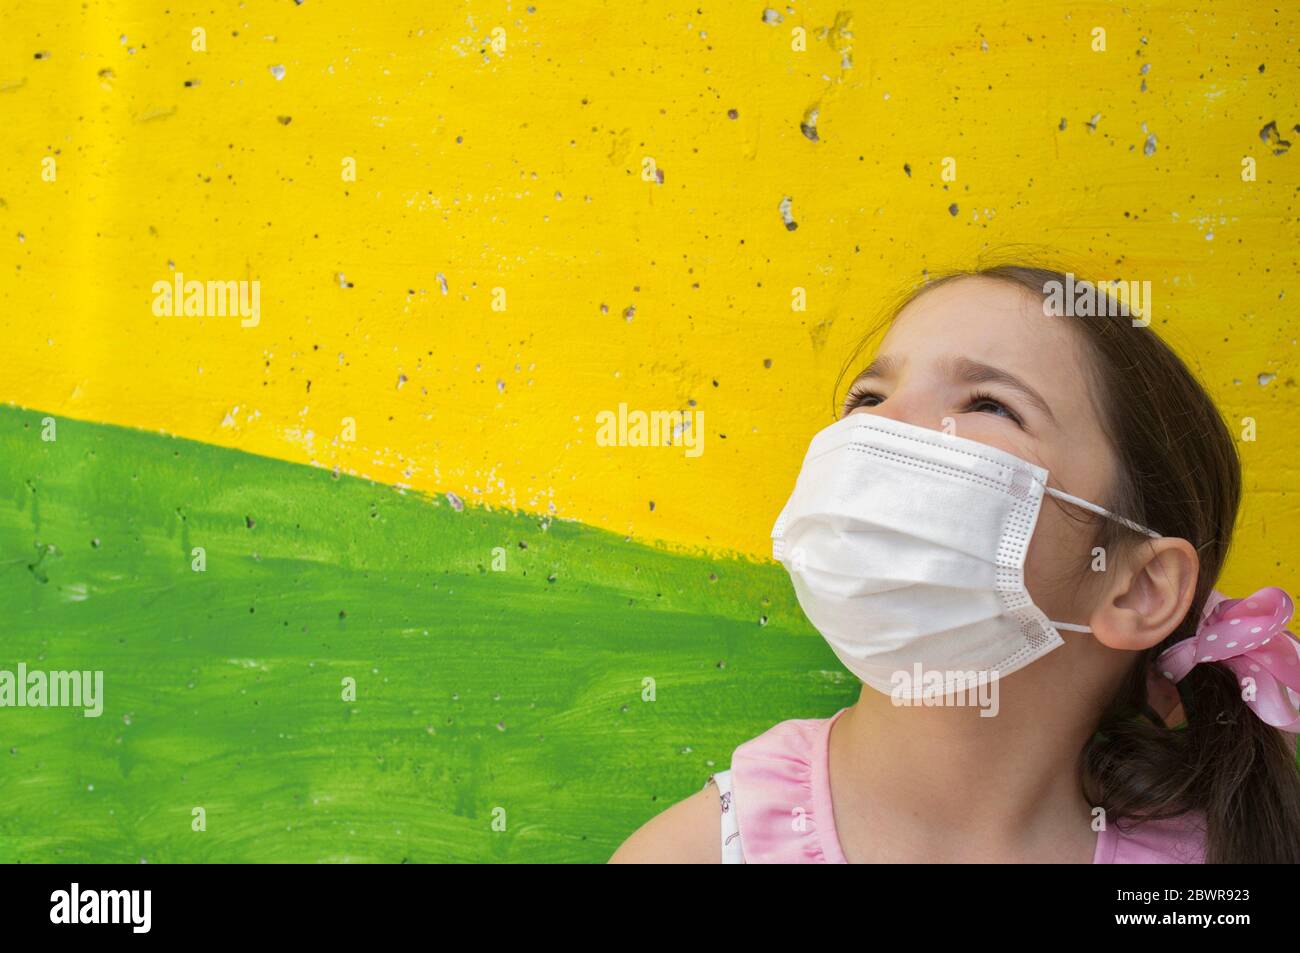 La niña esperanzada usa máscara facial durante la pandemia de Covid-19. Bloque de concreto de colores vivos como fondo. Foto de stock